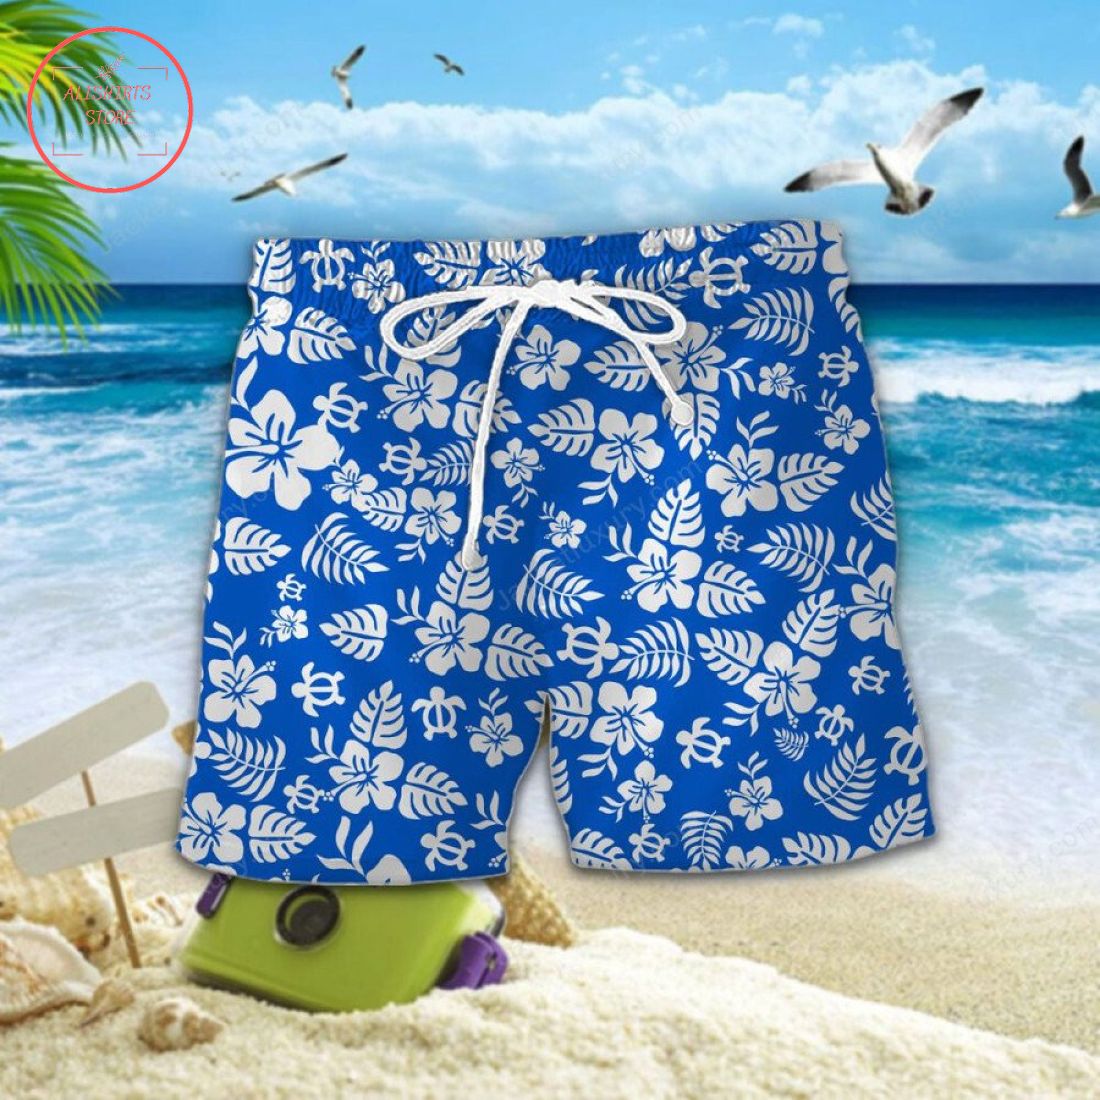 Birmingham City FC Aloha Hawaiian Shirt and Beach Shorts